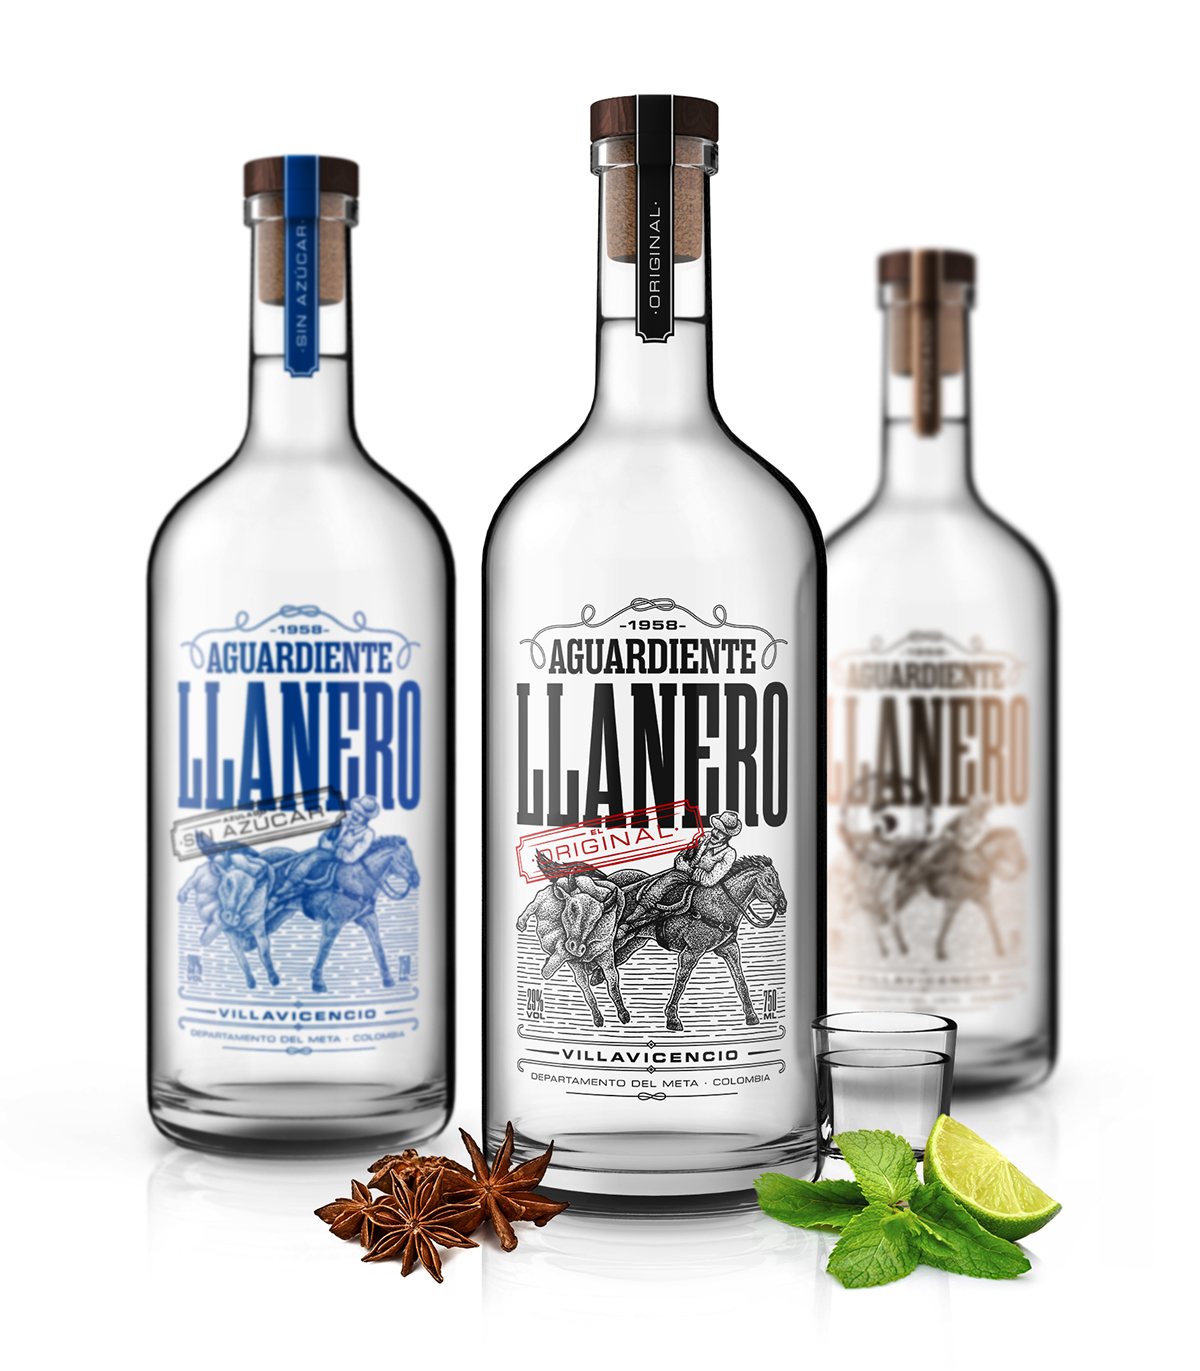 aguardiente llanero Licor liquor design colombia Llanos Orientales orinoquia meta villavicencio ilustracion cowboy